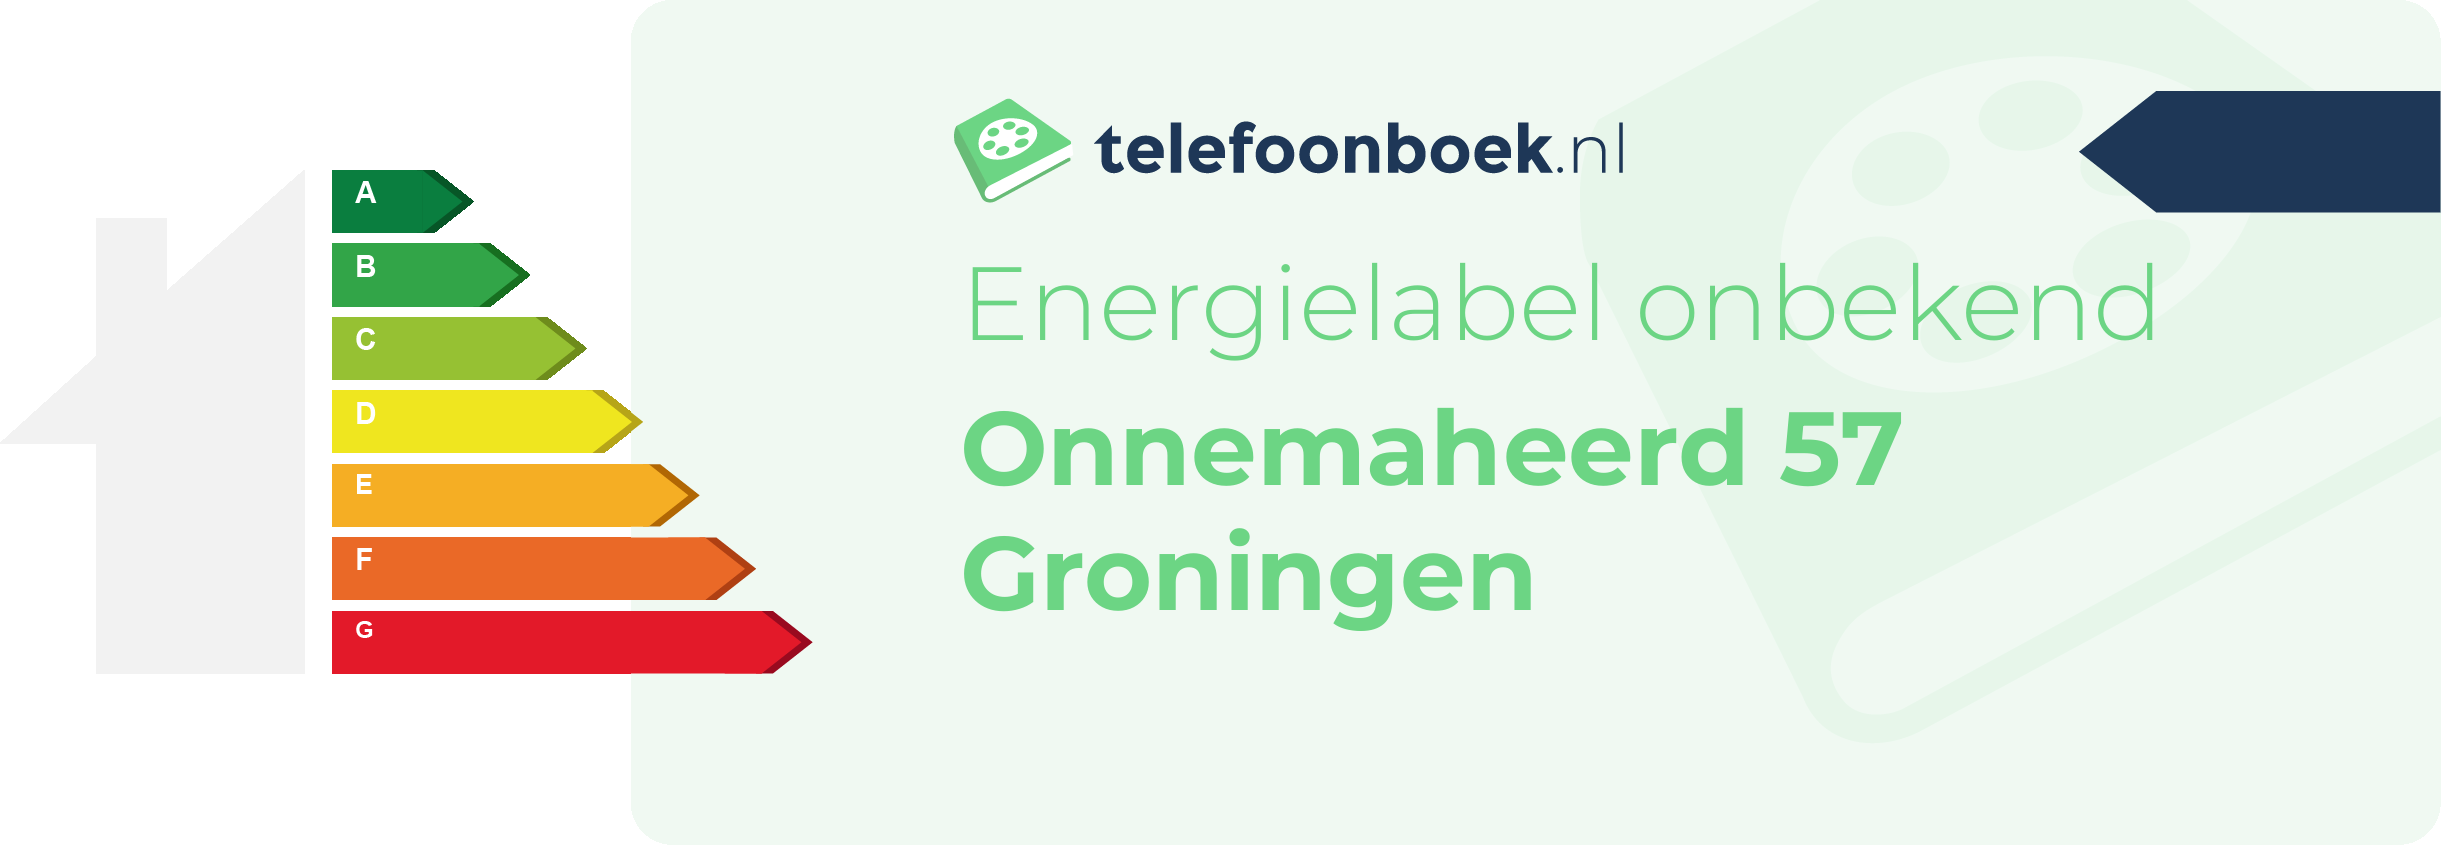 Energielabel Onnemaheerd 57 Groningen